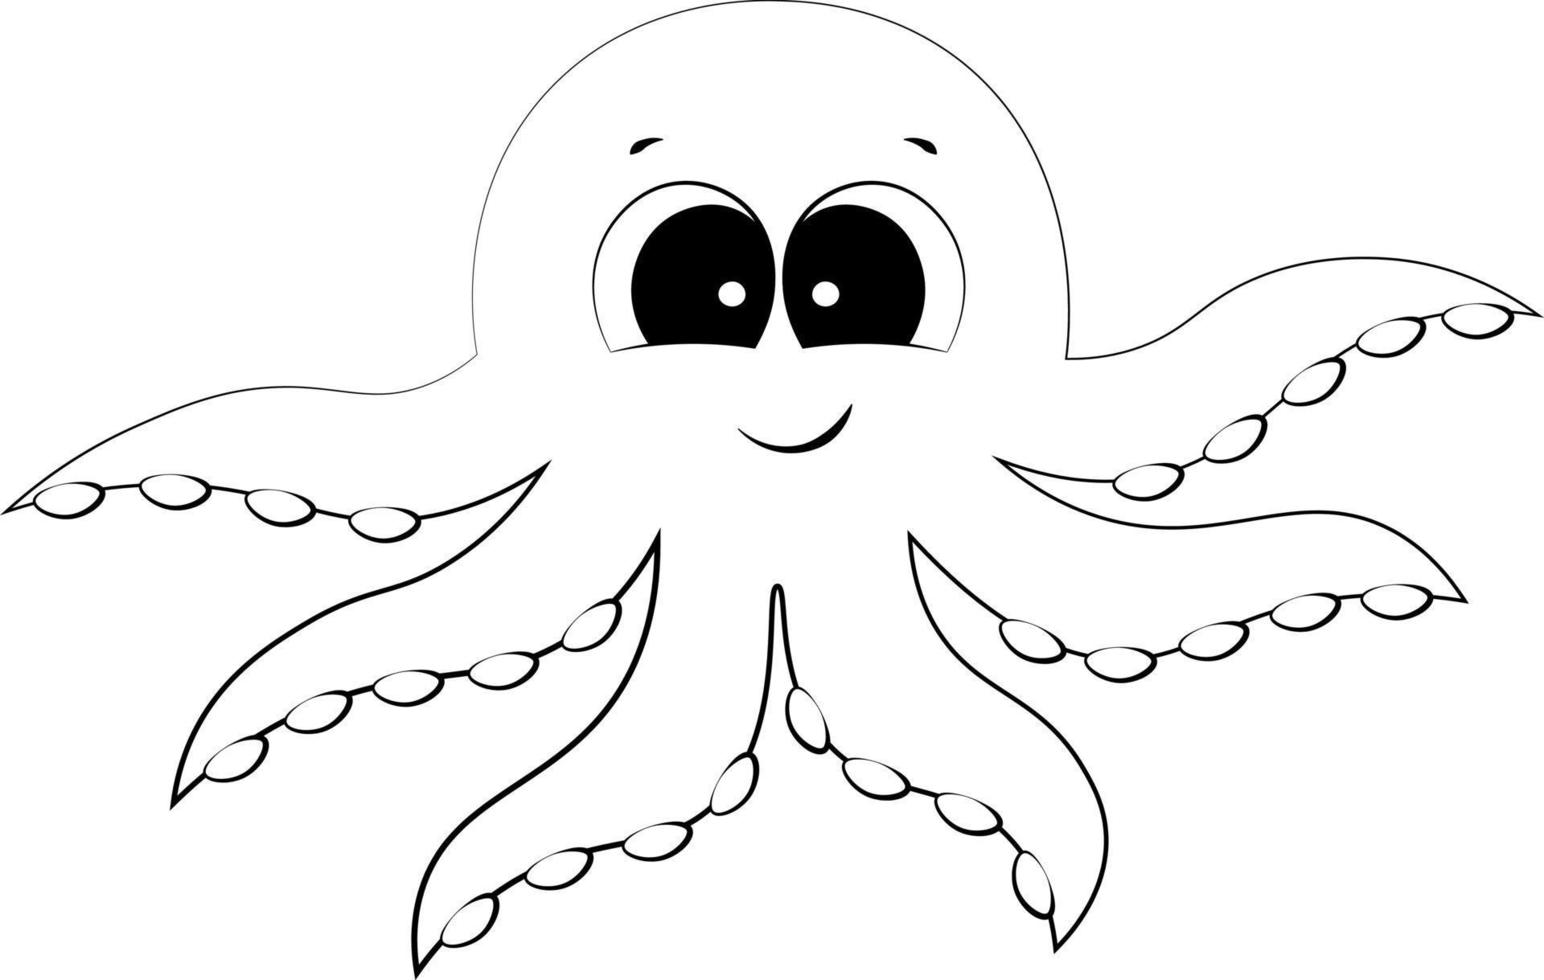 niedlicher Cartoon-Oktopus. Zeichnen Sie die Illustration in Schwarzweiß vektor